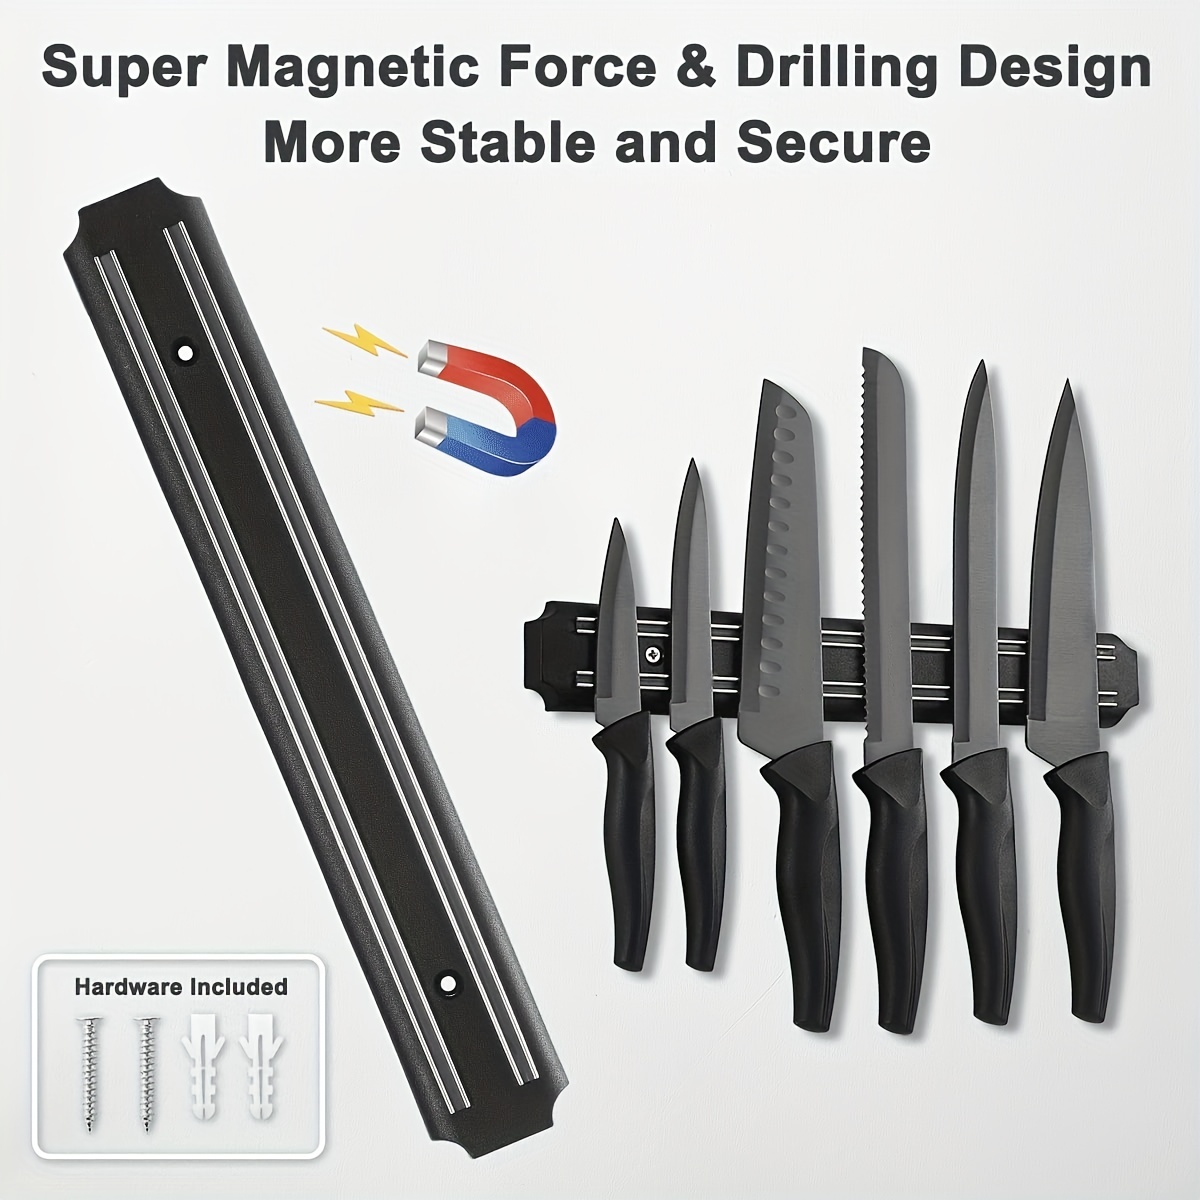 Storage Magnetic Knife Holder